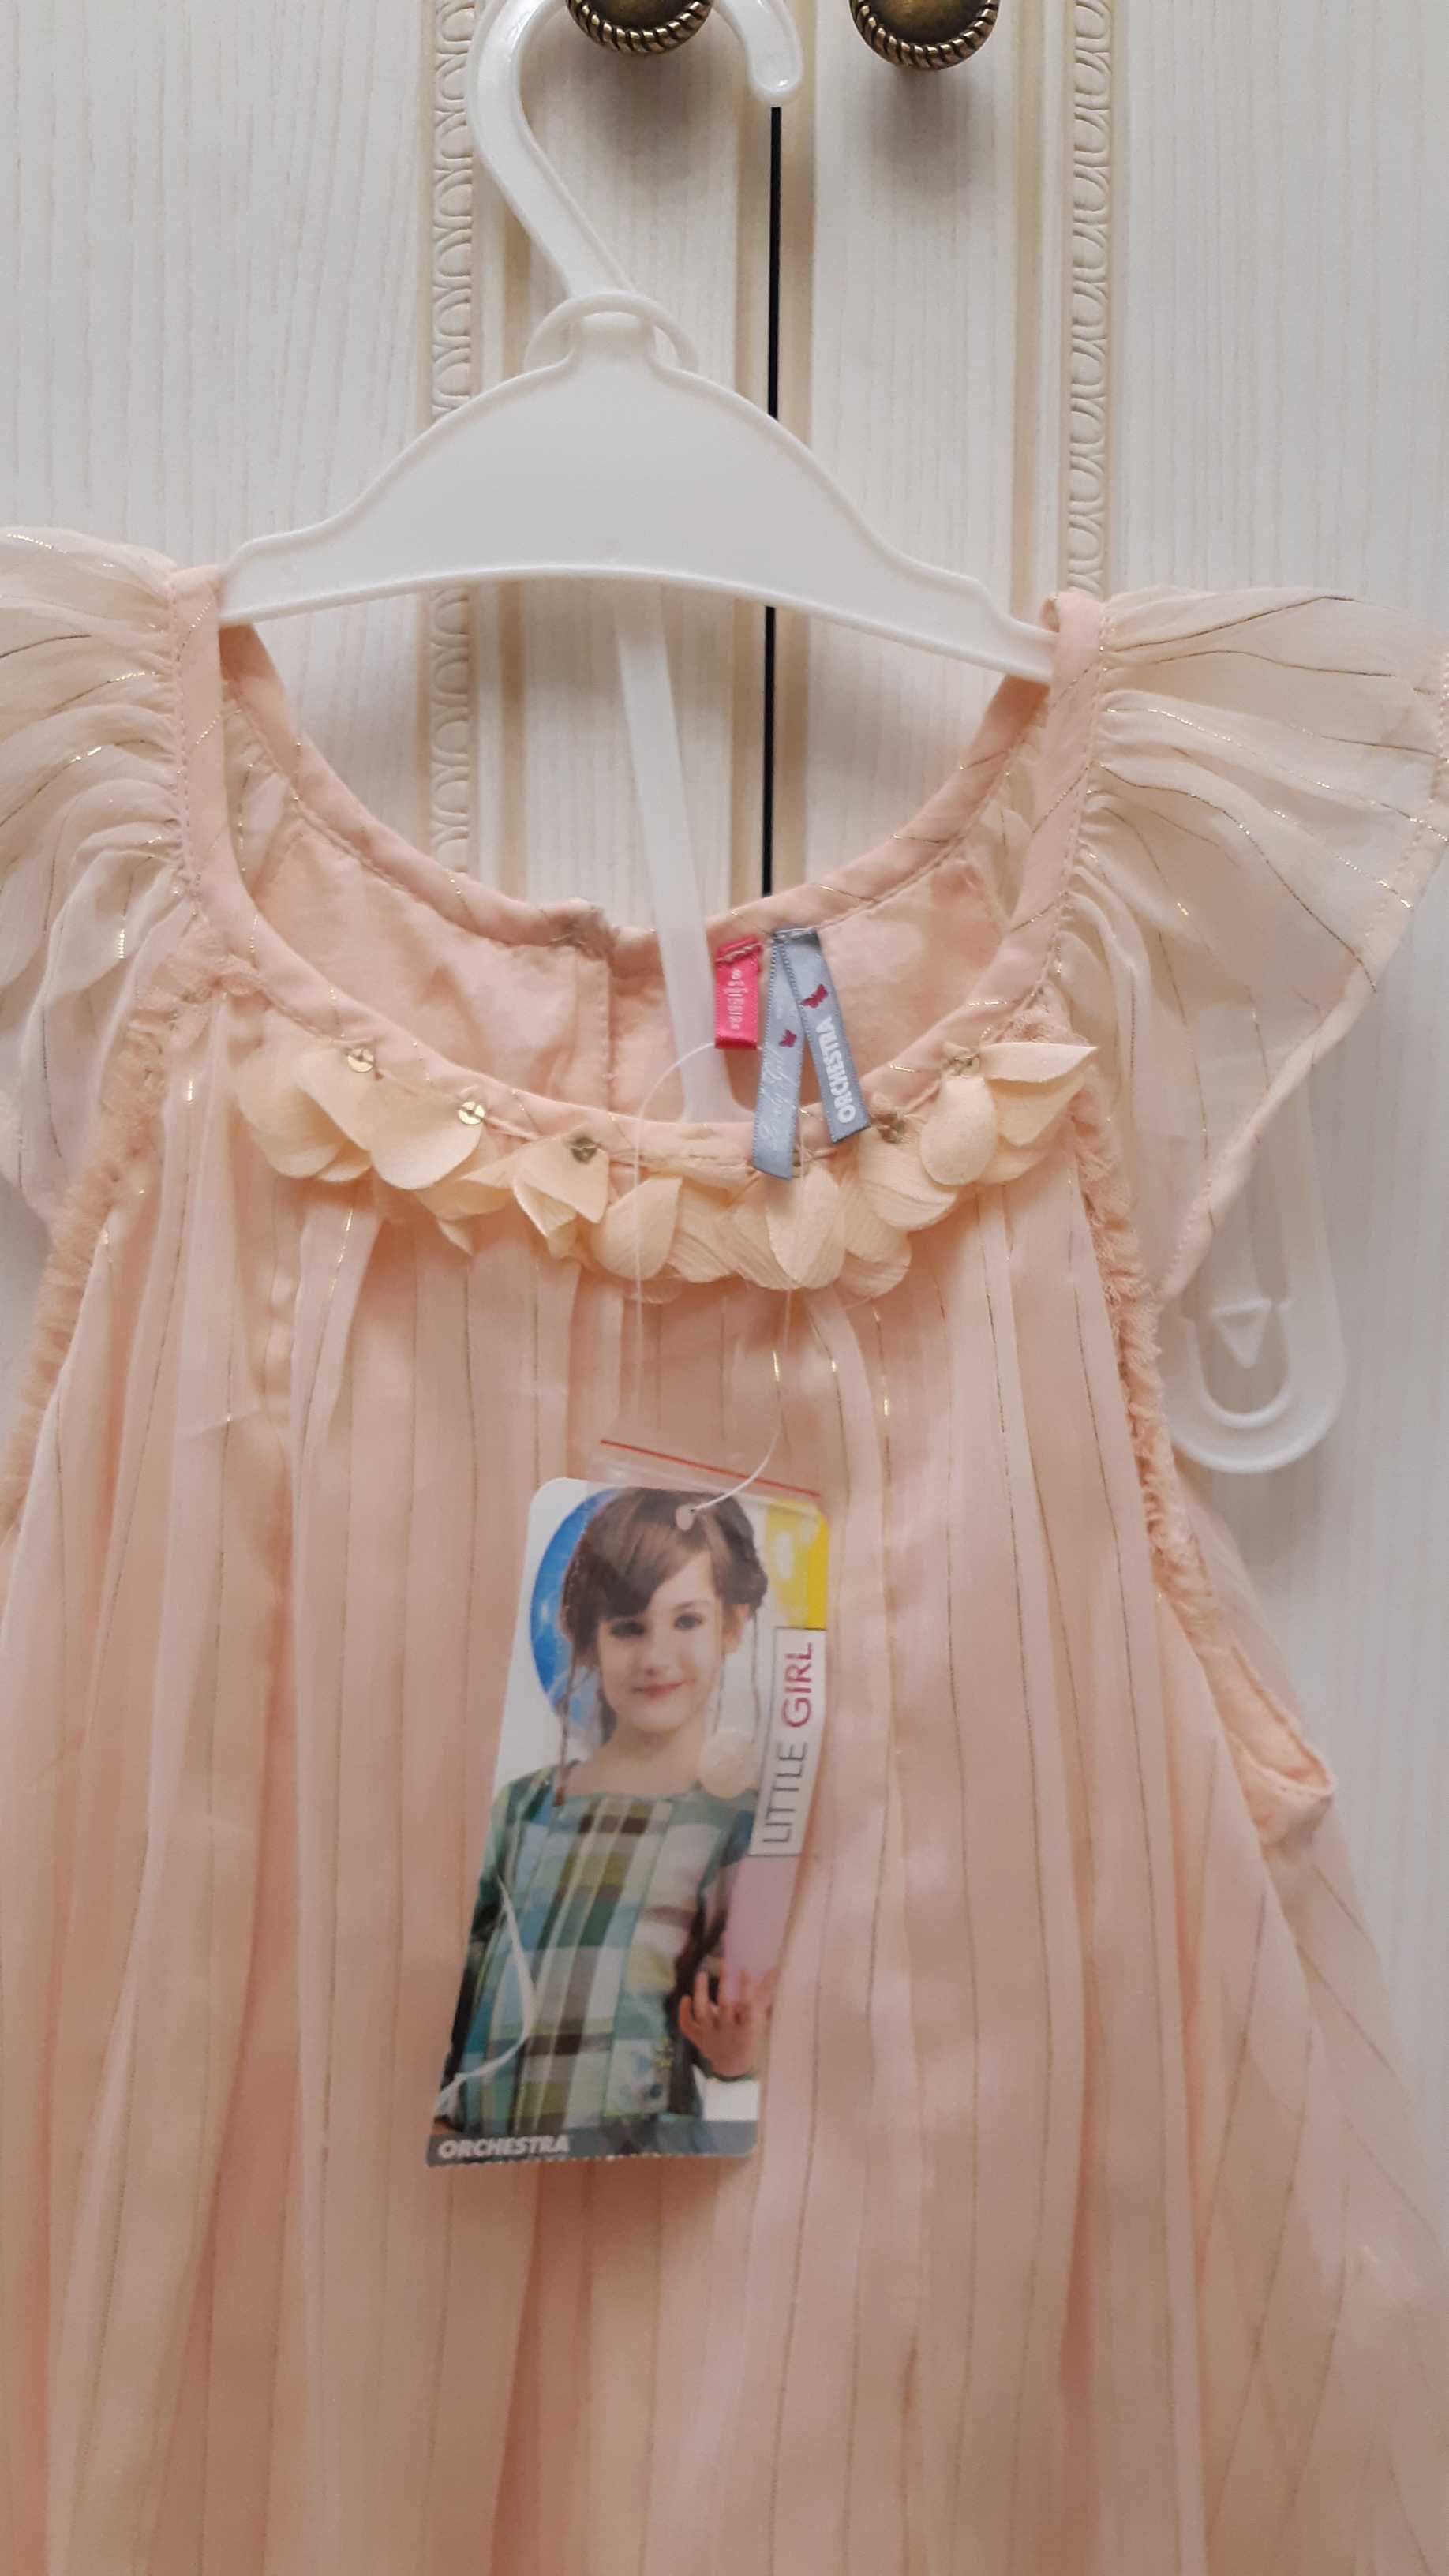 Продам новое нарядное платье бренда Orchestra на девочку 7-8-9 лет